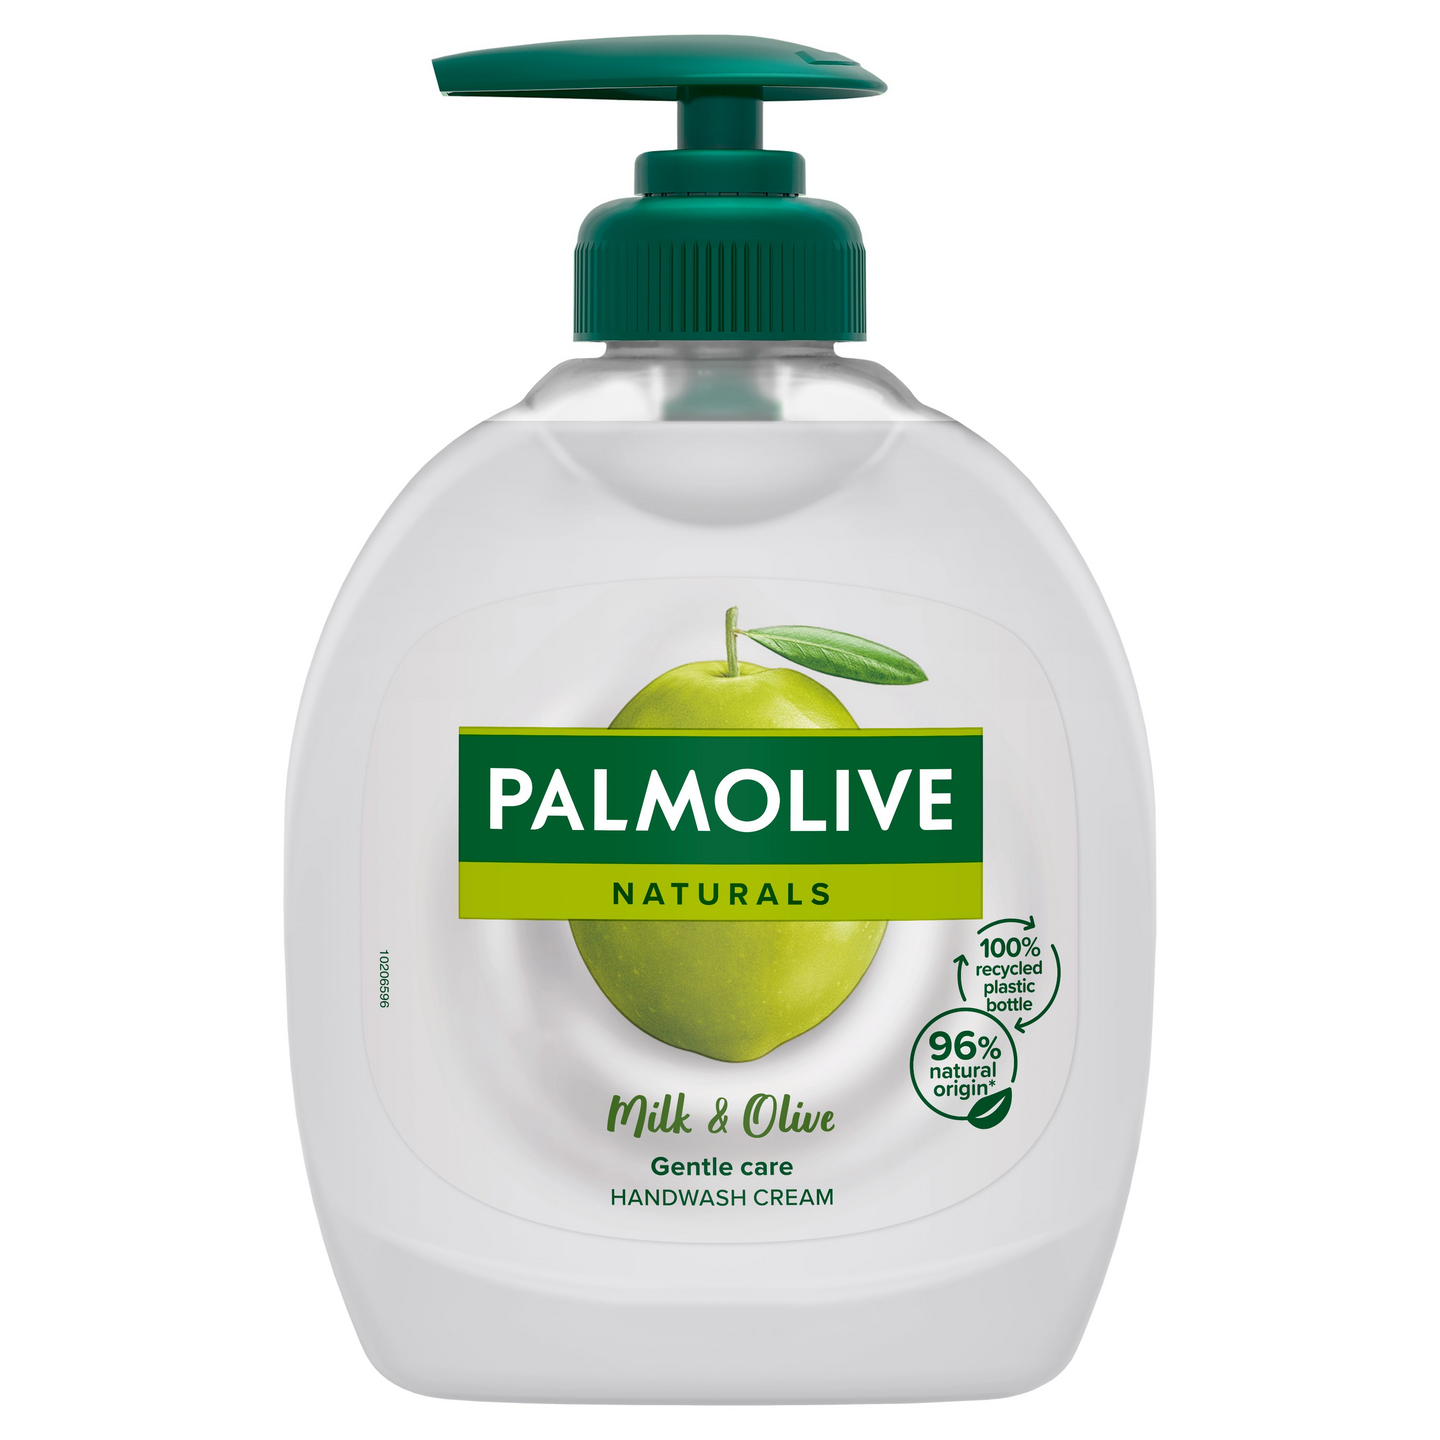 Palmolive Naturals nestesaippua 300ml Olive & Milk